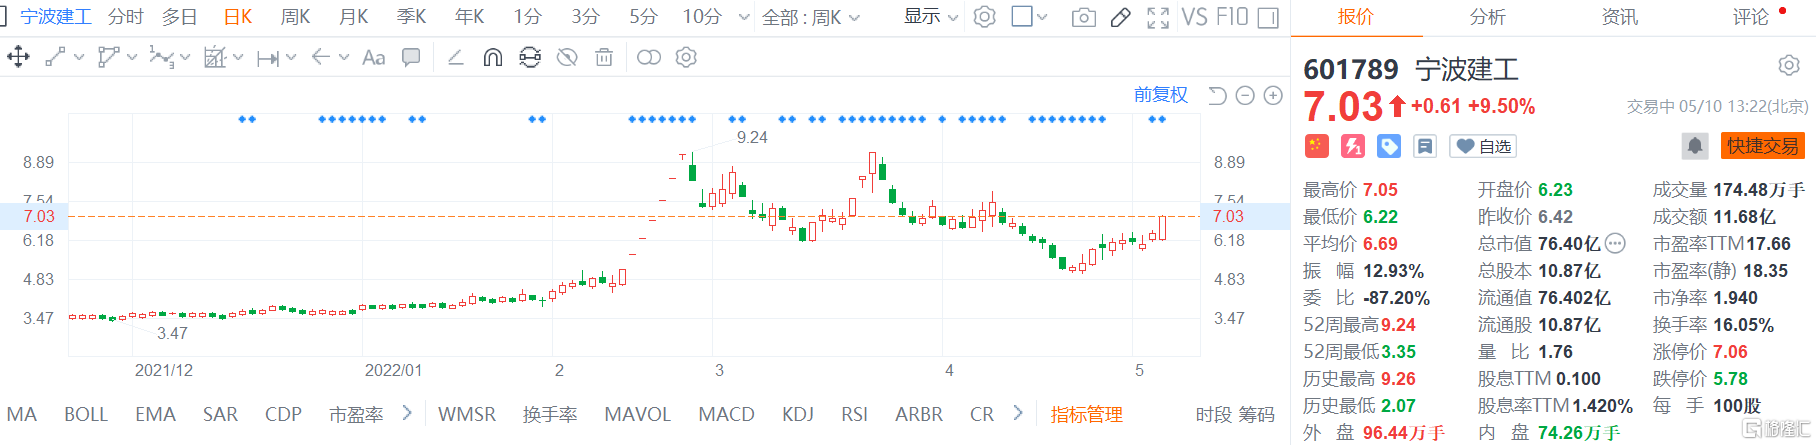 宁波建工(601789.SH)接近涨停报7.03元 总市值76.4亿